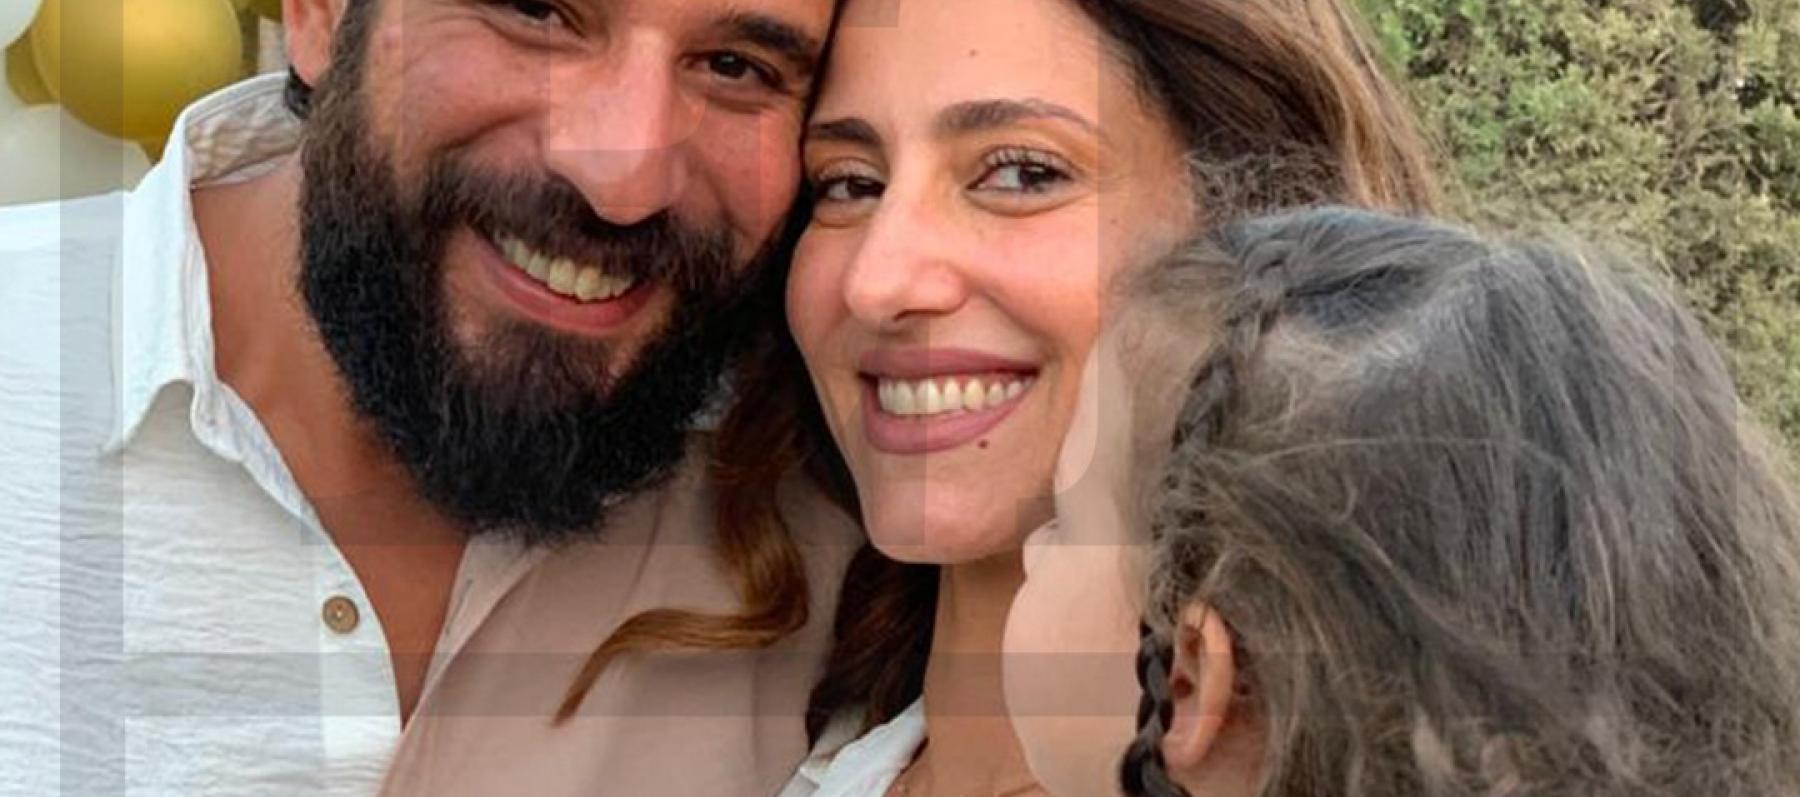 حنان مطاوع وزوجها أمير وابنتها أماليا - صورة حصرية ET بالعربي